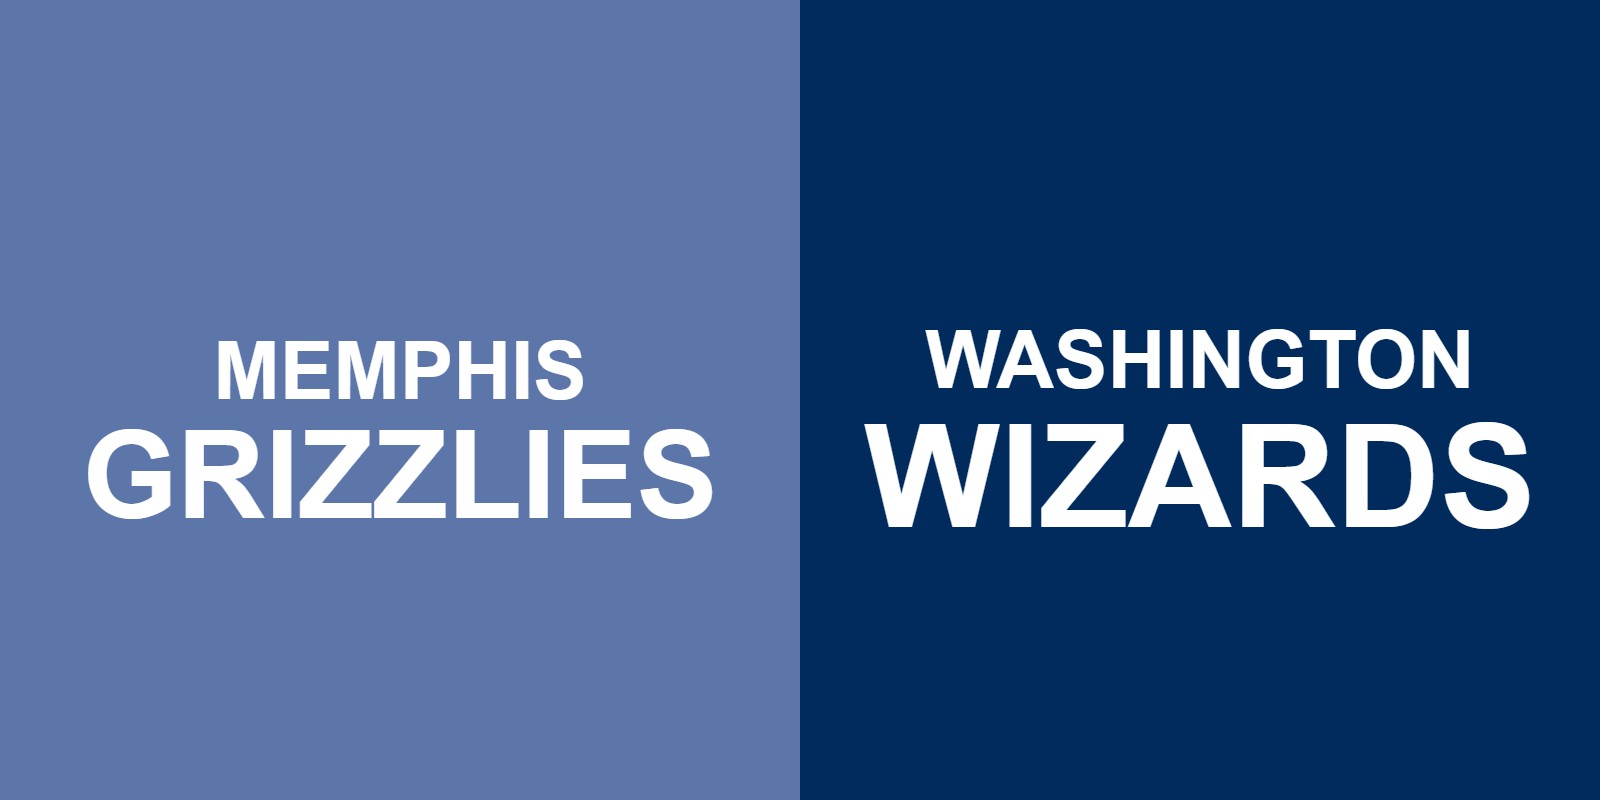 Grizzlies vs Wizards